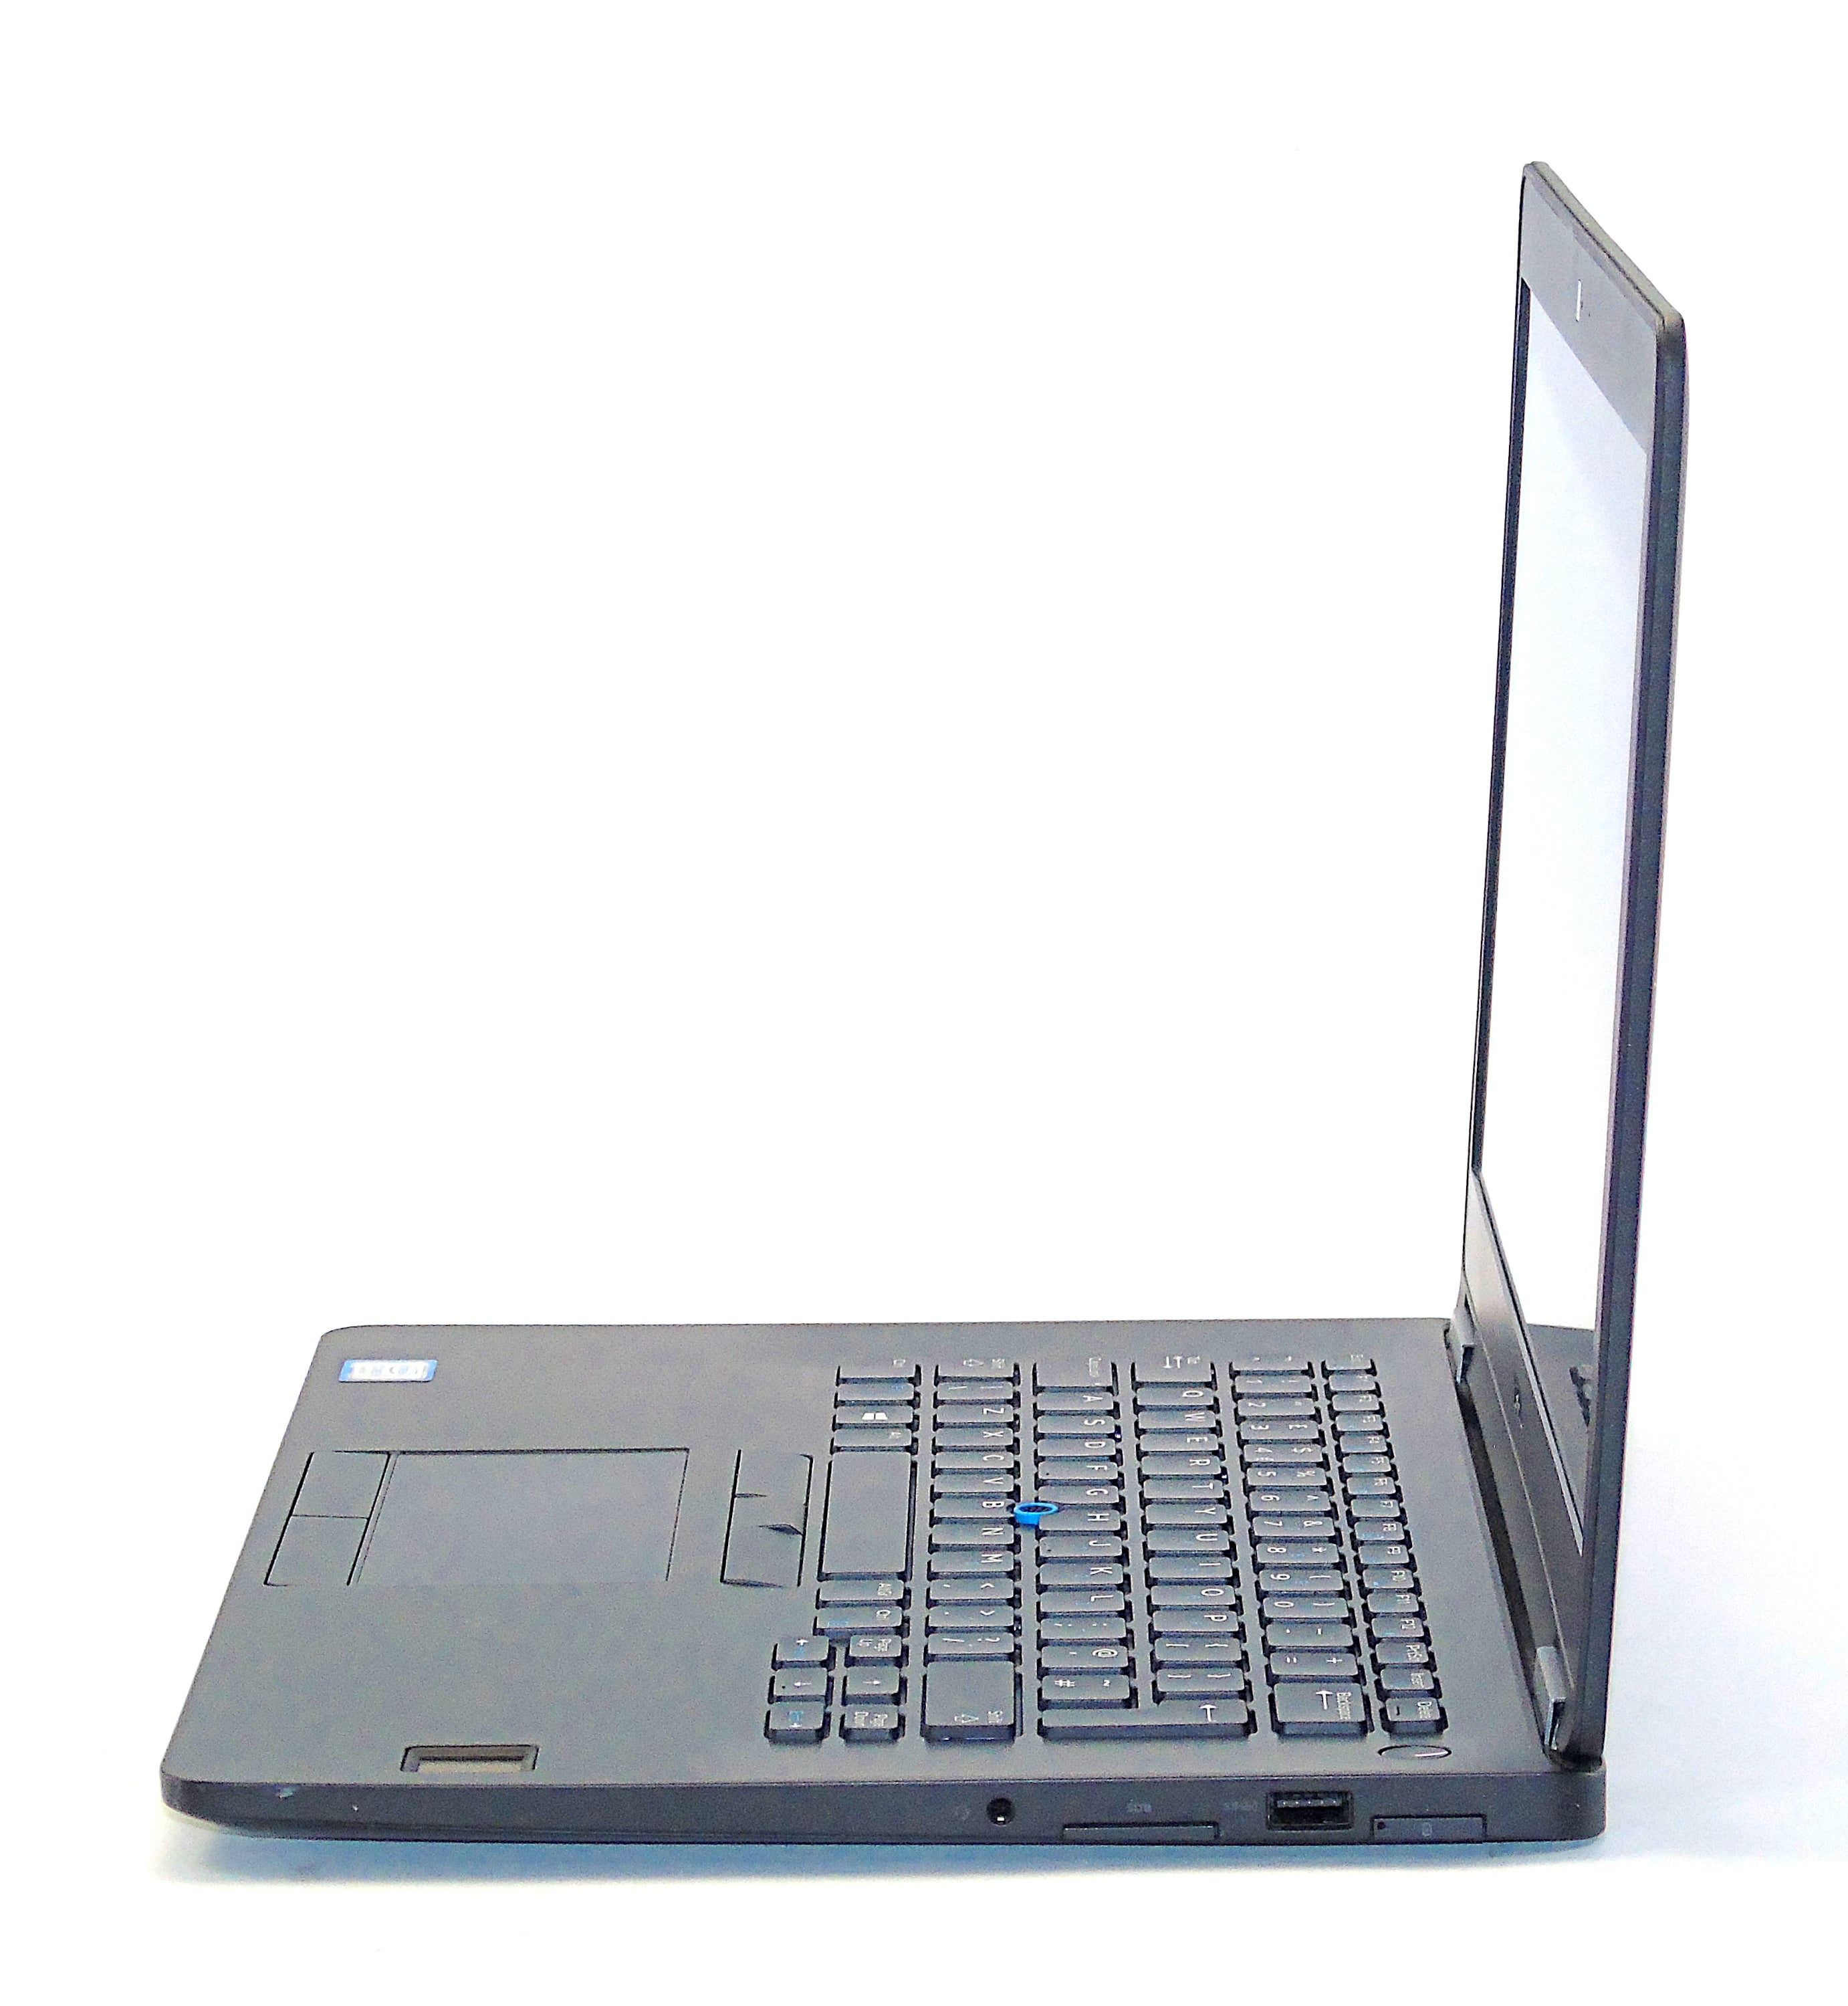 Dell Latitude E7470 Laptop, 13.9" i5 6th Gen, 8GB RAM, 256GB SSD